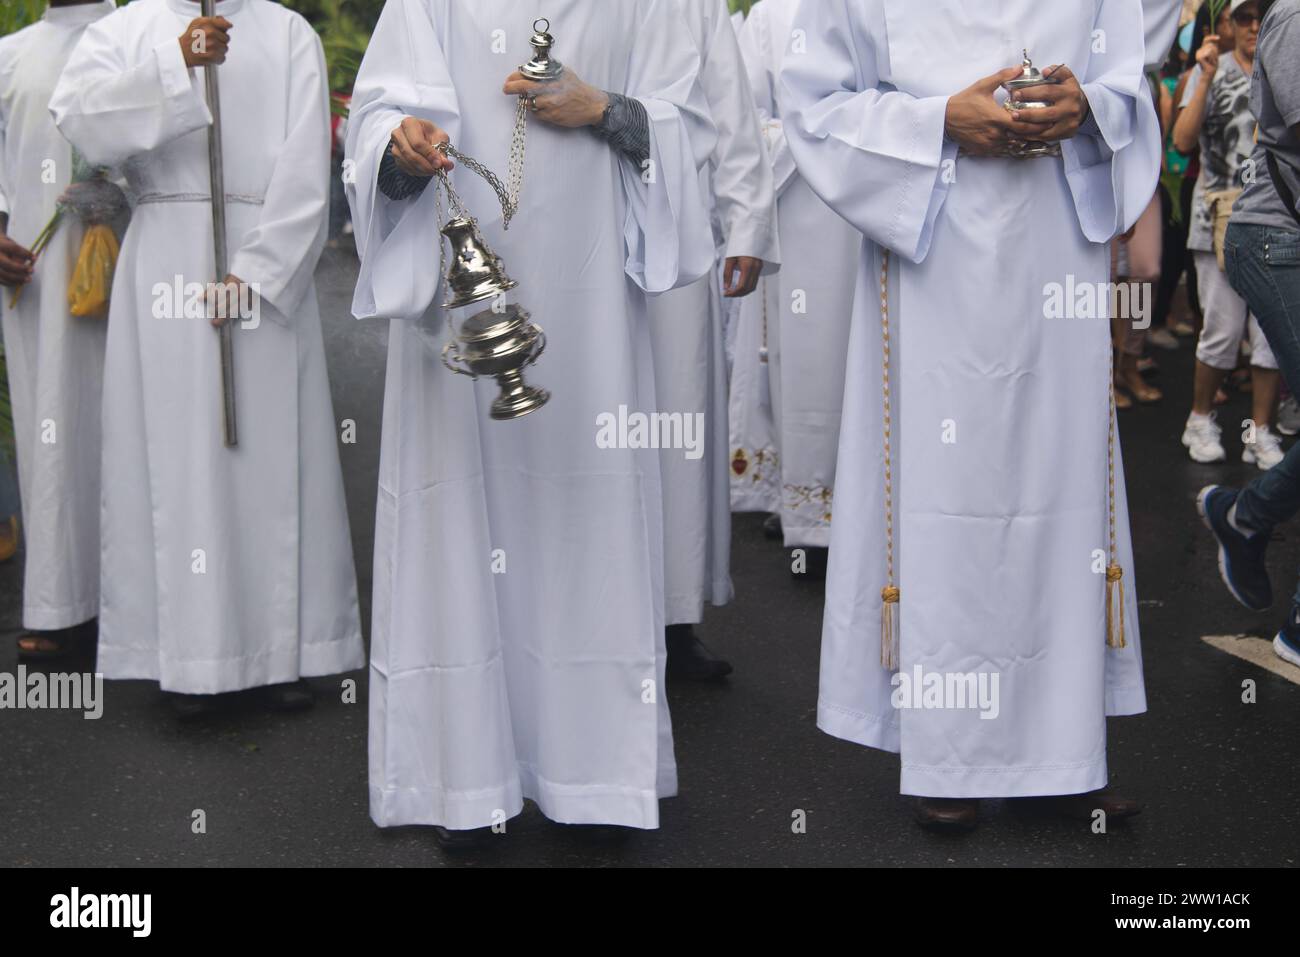 Salvador, Bahia, Brésil - 14 avril 2019 : des séminaristes catholiques participent à la procession du dimanche des Rameaux avec de l'encens dans la ville de Salvad Banque D'Images